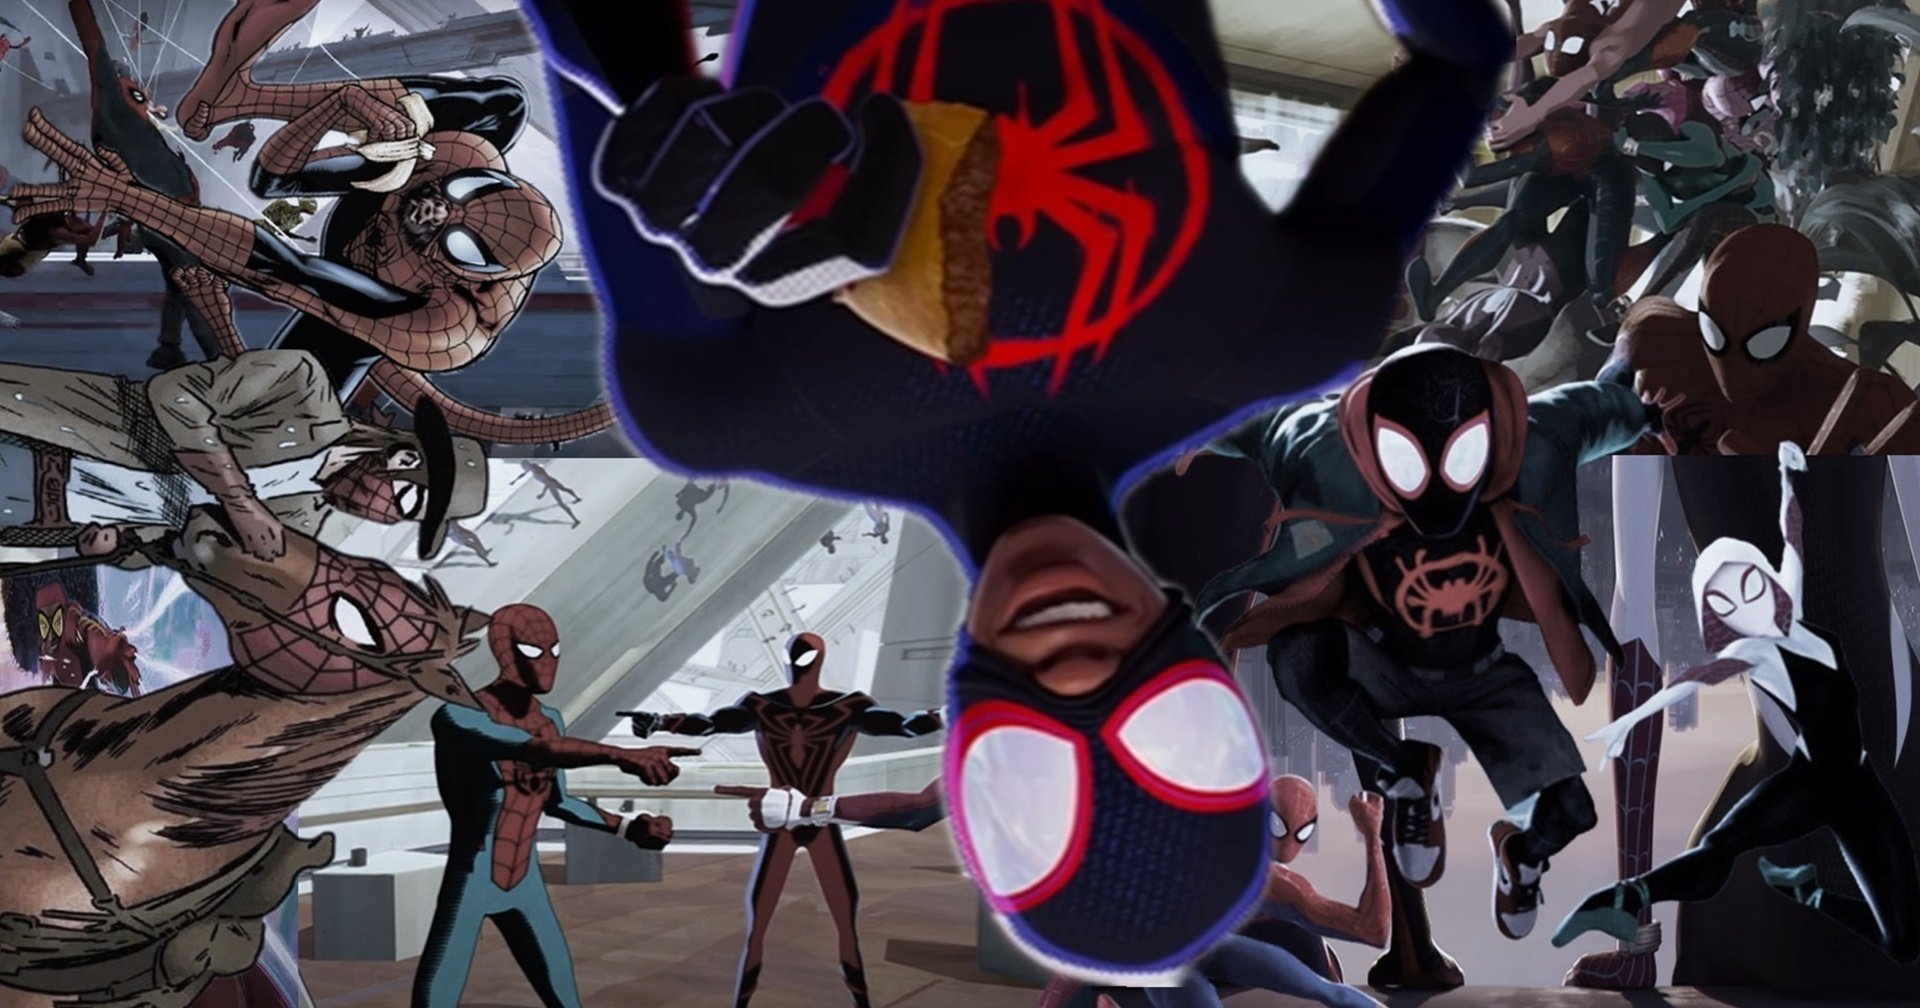 ทำความรู้จักผู้มีพลังแมงมุมก่อนดู Spider-Man Across the Spider-Verse